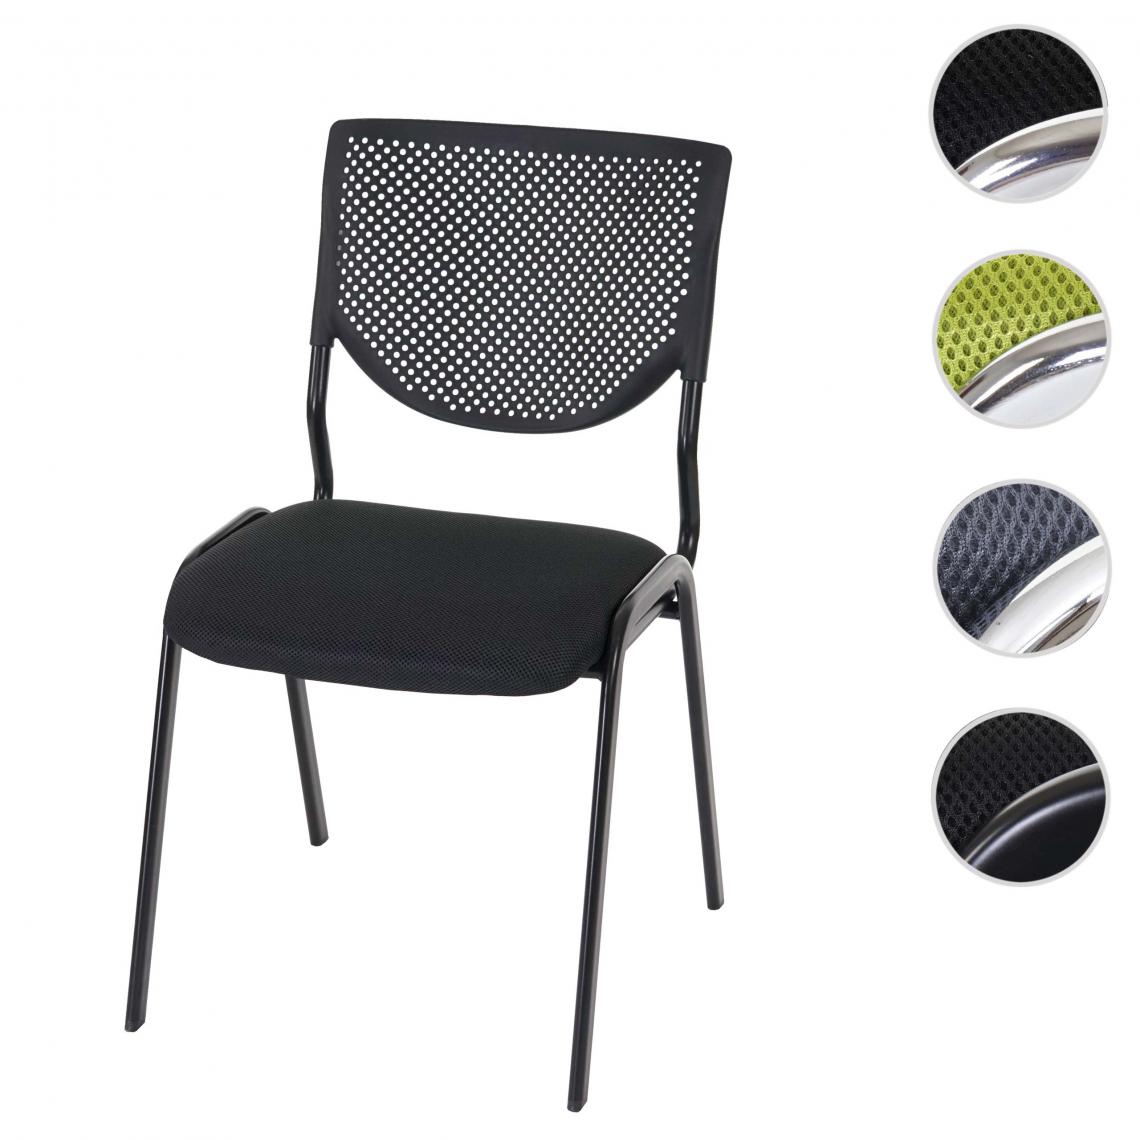 Mendler - Chaise visiteur T401, chaise de conférence empilable, tissu/textile ~ siège noir, pieds chromés - Chaises